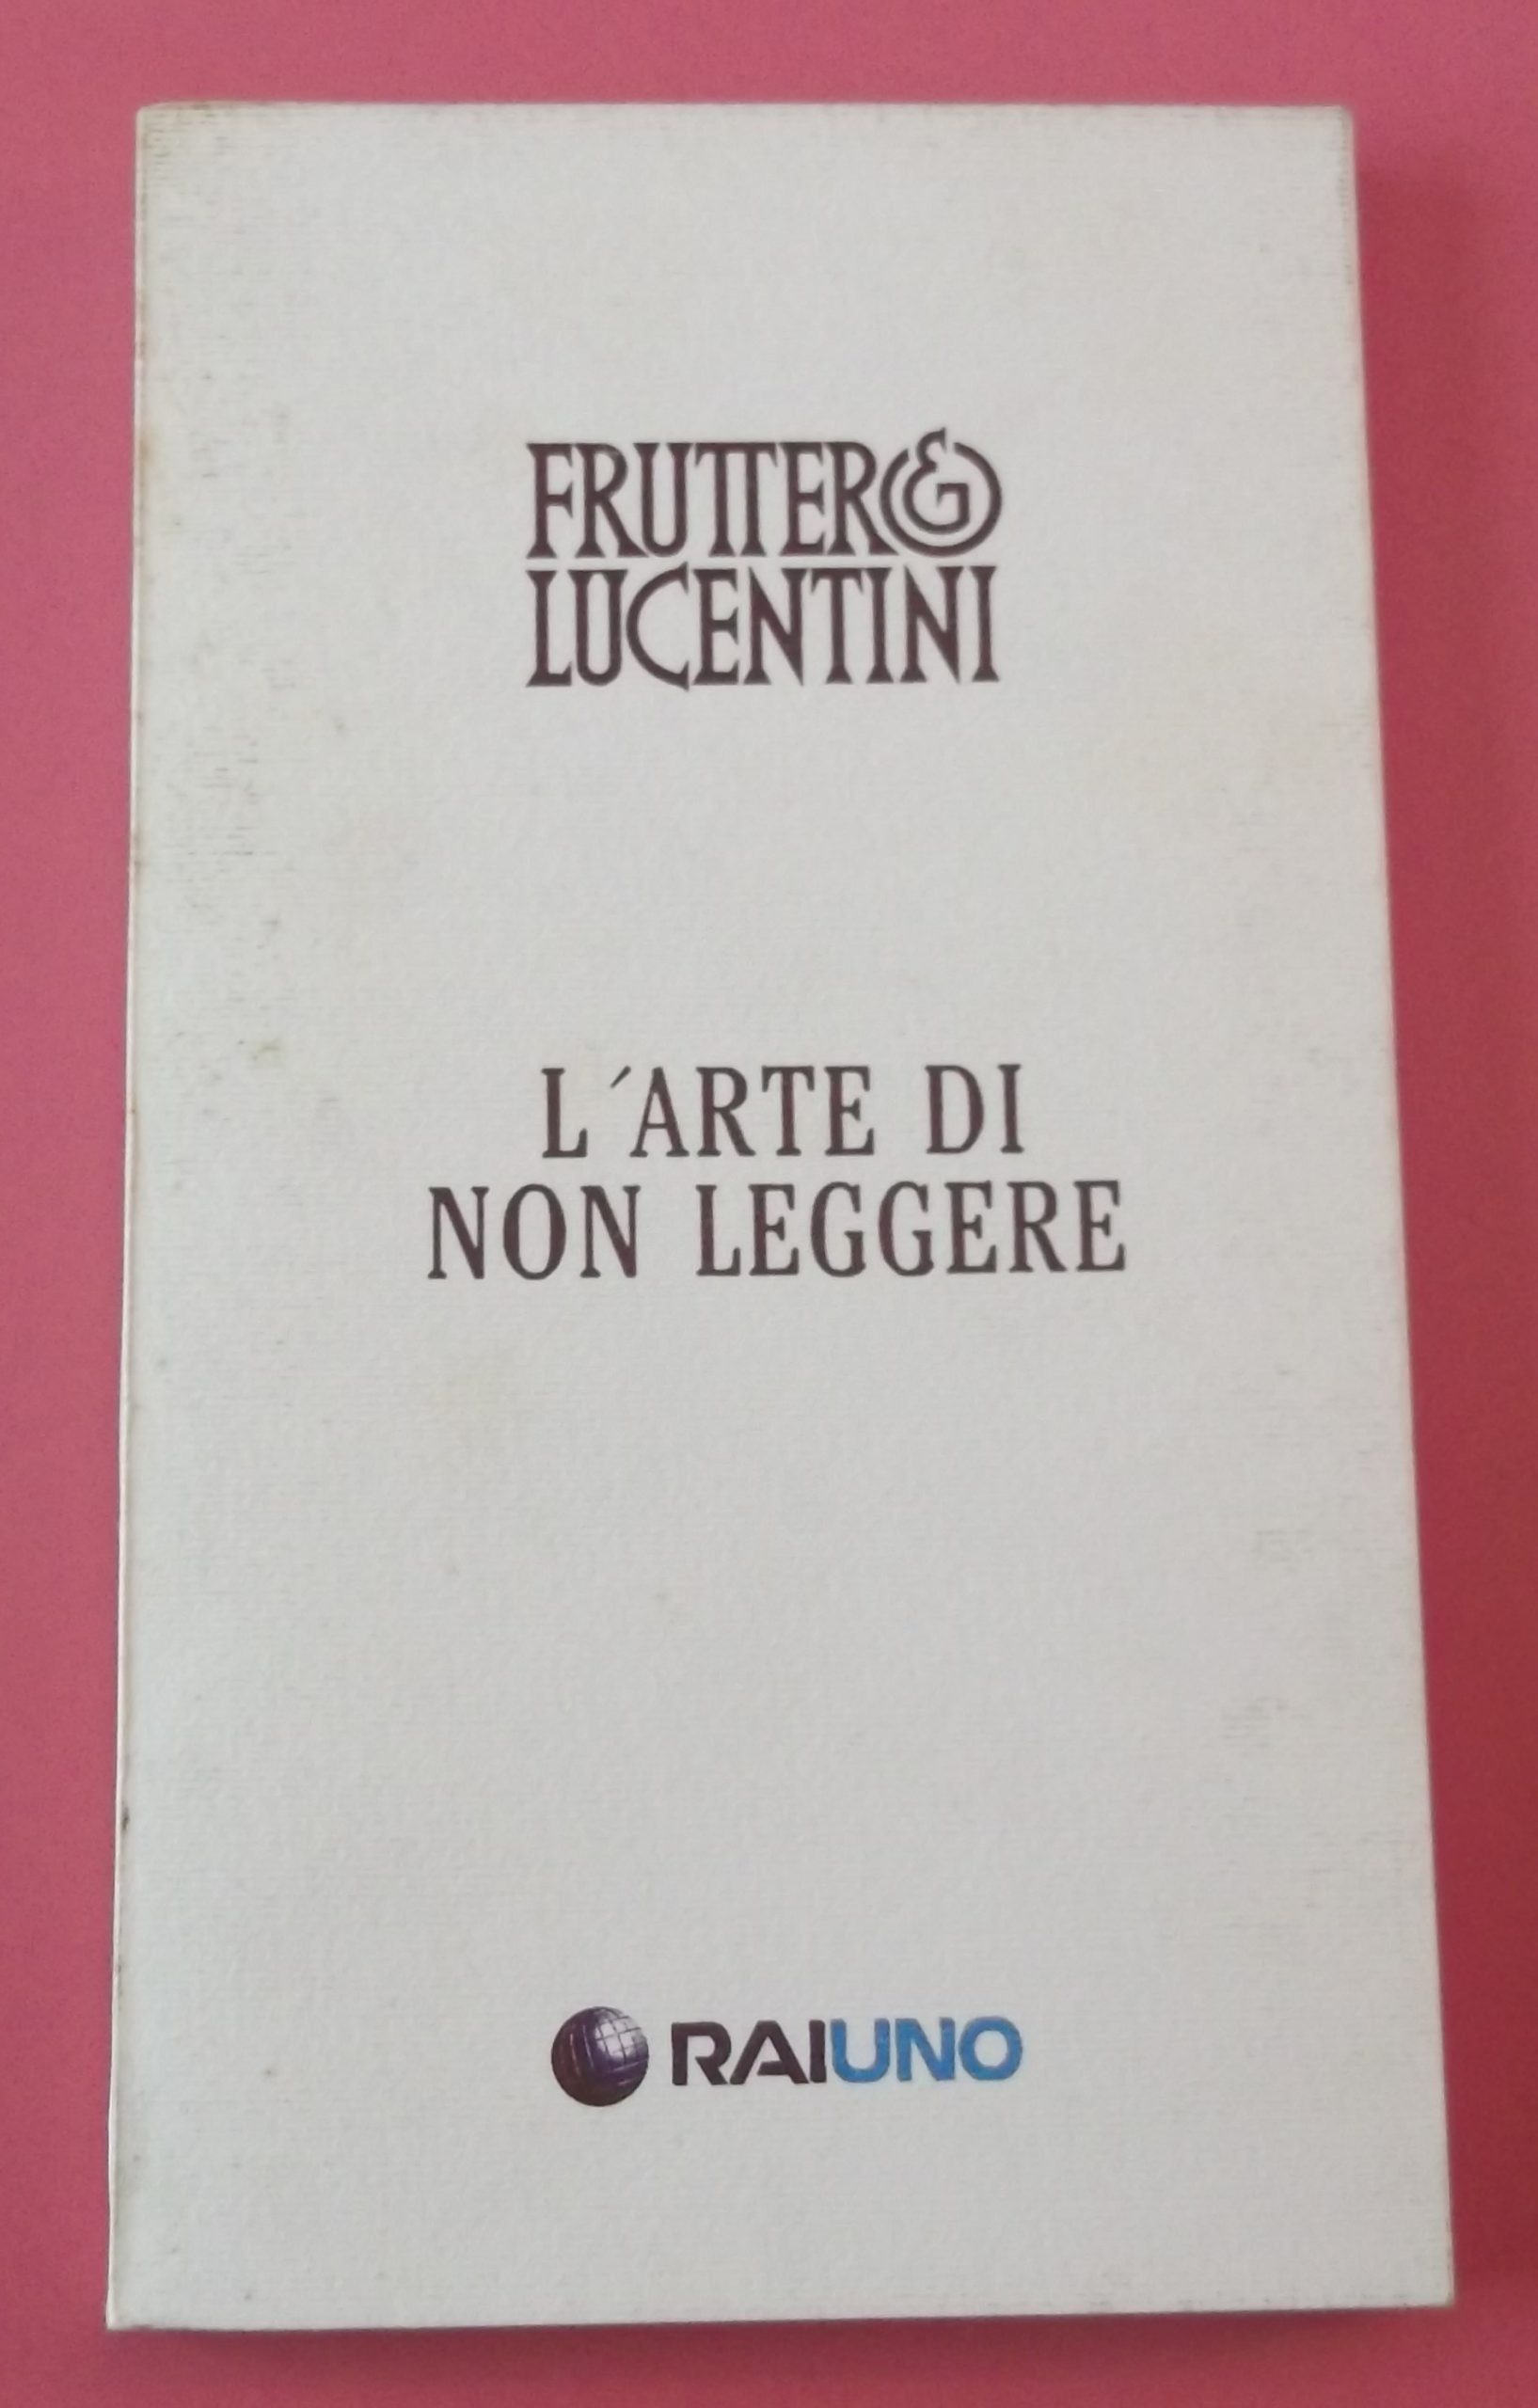 “L’arte di non leggere” di Fruttero & Lucentini (RaiUno Relazioni Pubbliche 1994): un concept book ormai introvabile!